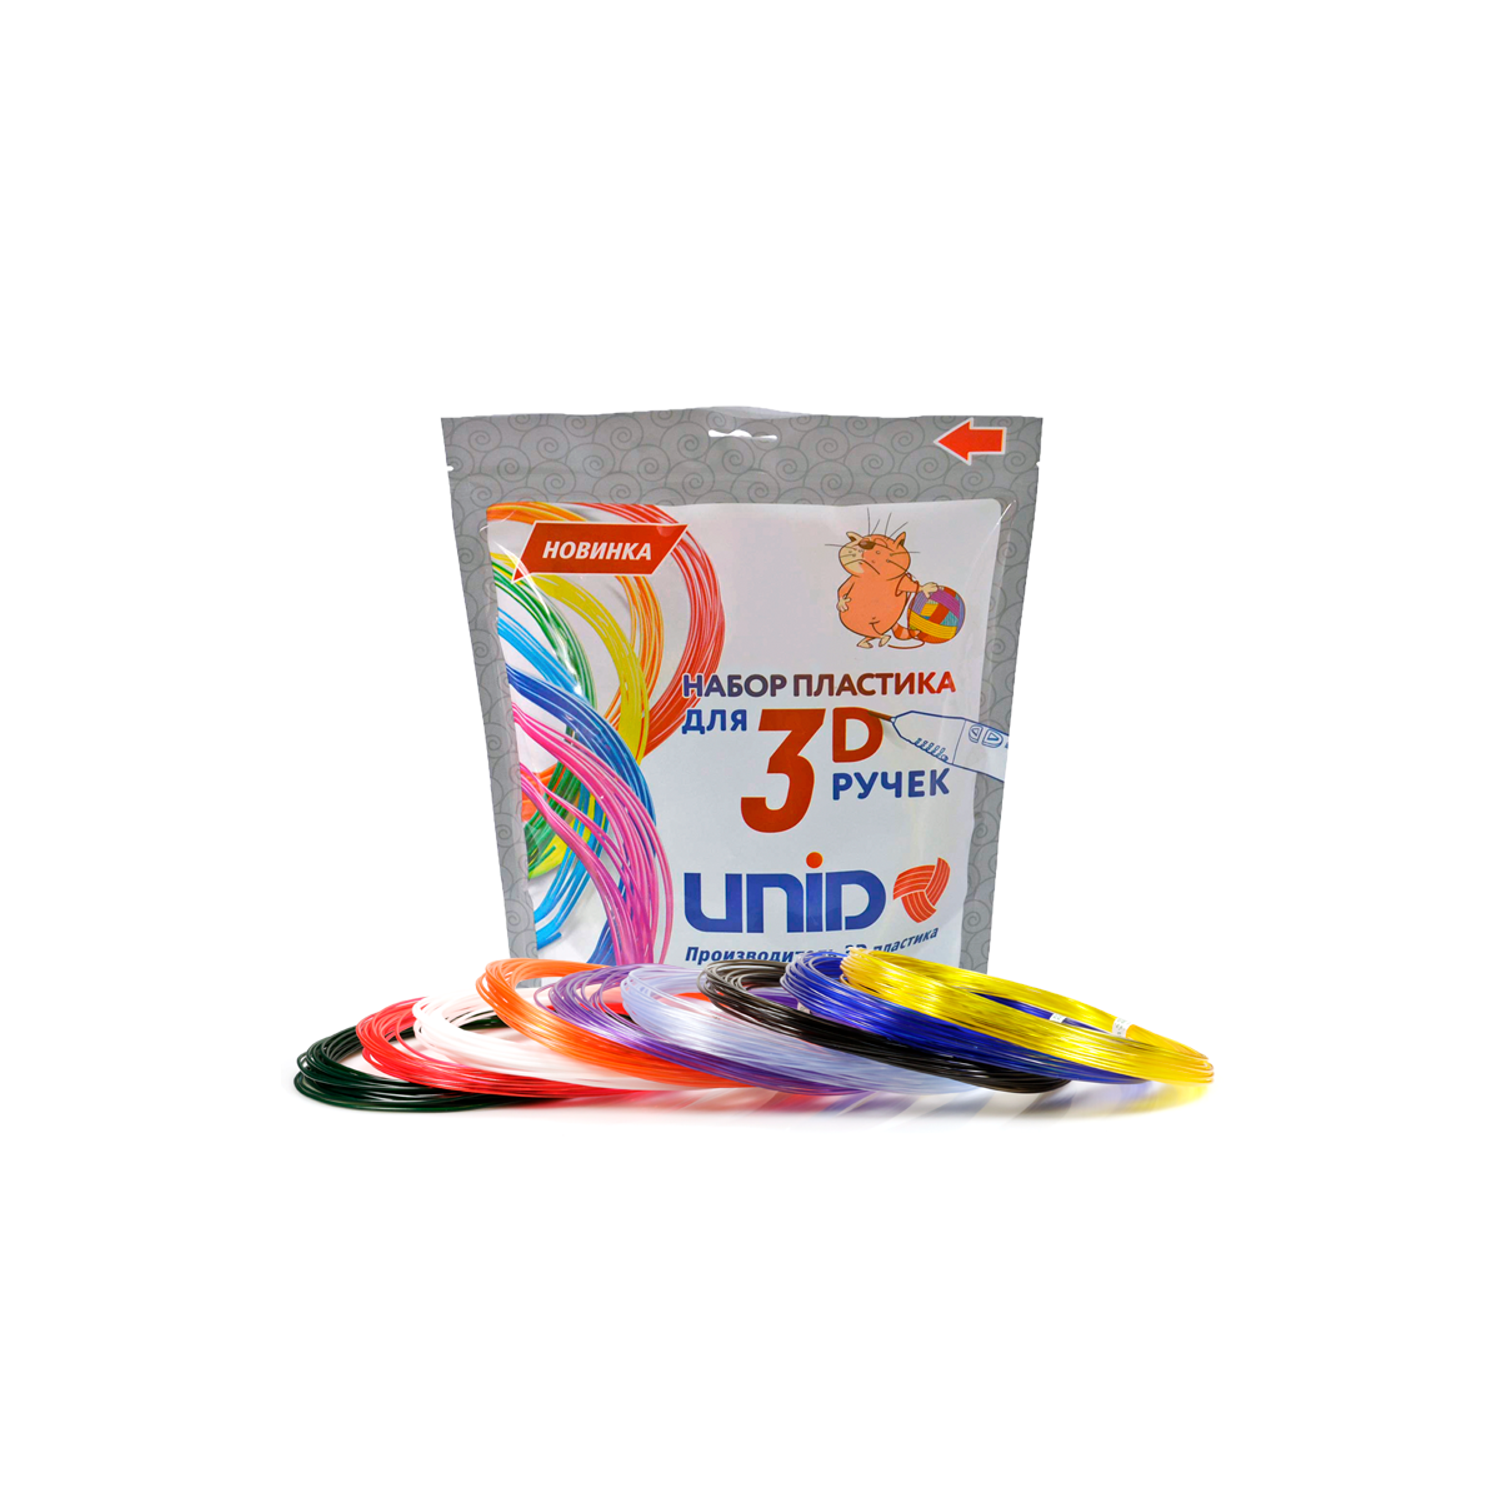 Пластик для 3д ручки UNID PRO9 - фото 1